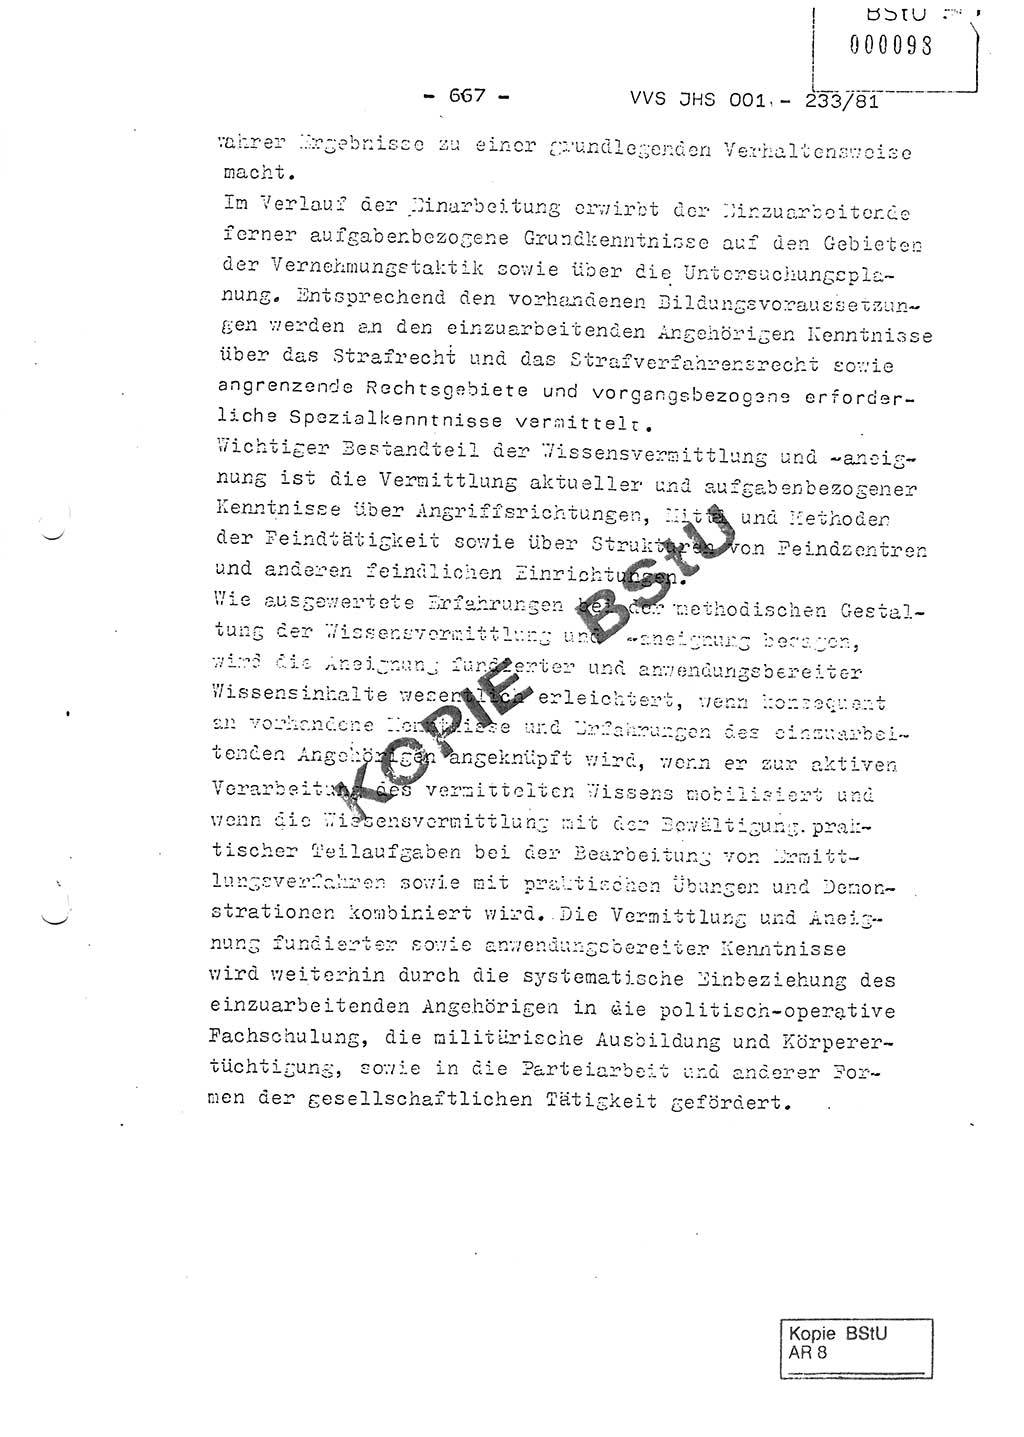 Dissertation Oberstleutnant Horst Zank (JHS), Oberstleutnant Dr. Karl-Heinz Knoblauch (JHS), Oberstleutnant Gustav-Adolf Kowalewski (HA Ⅸ), Oberstleutnant Wolfgang Plötner (HA Ⅸ), Ministerium für Staatssicherheit (MfS) [Deutsche Demokratische Republik (DDR)], Juristische Hochschule (JHS), Vertrauliche Verschlußsache (VVS) o001-233/81, Potsdam 1981, Blatt 667 (Diss. MfS DDR JHS VVS o001-233/81 1981, Bl. 667)